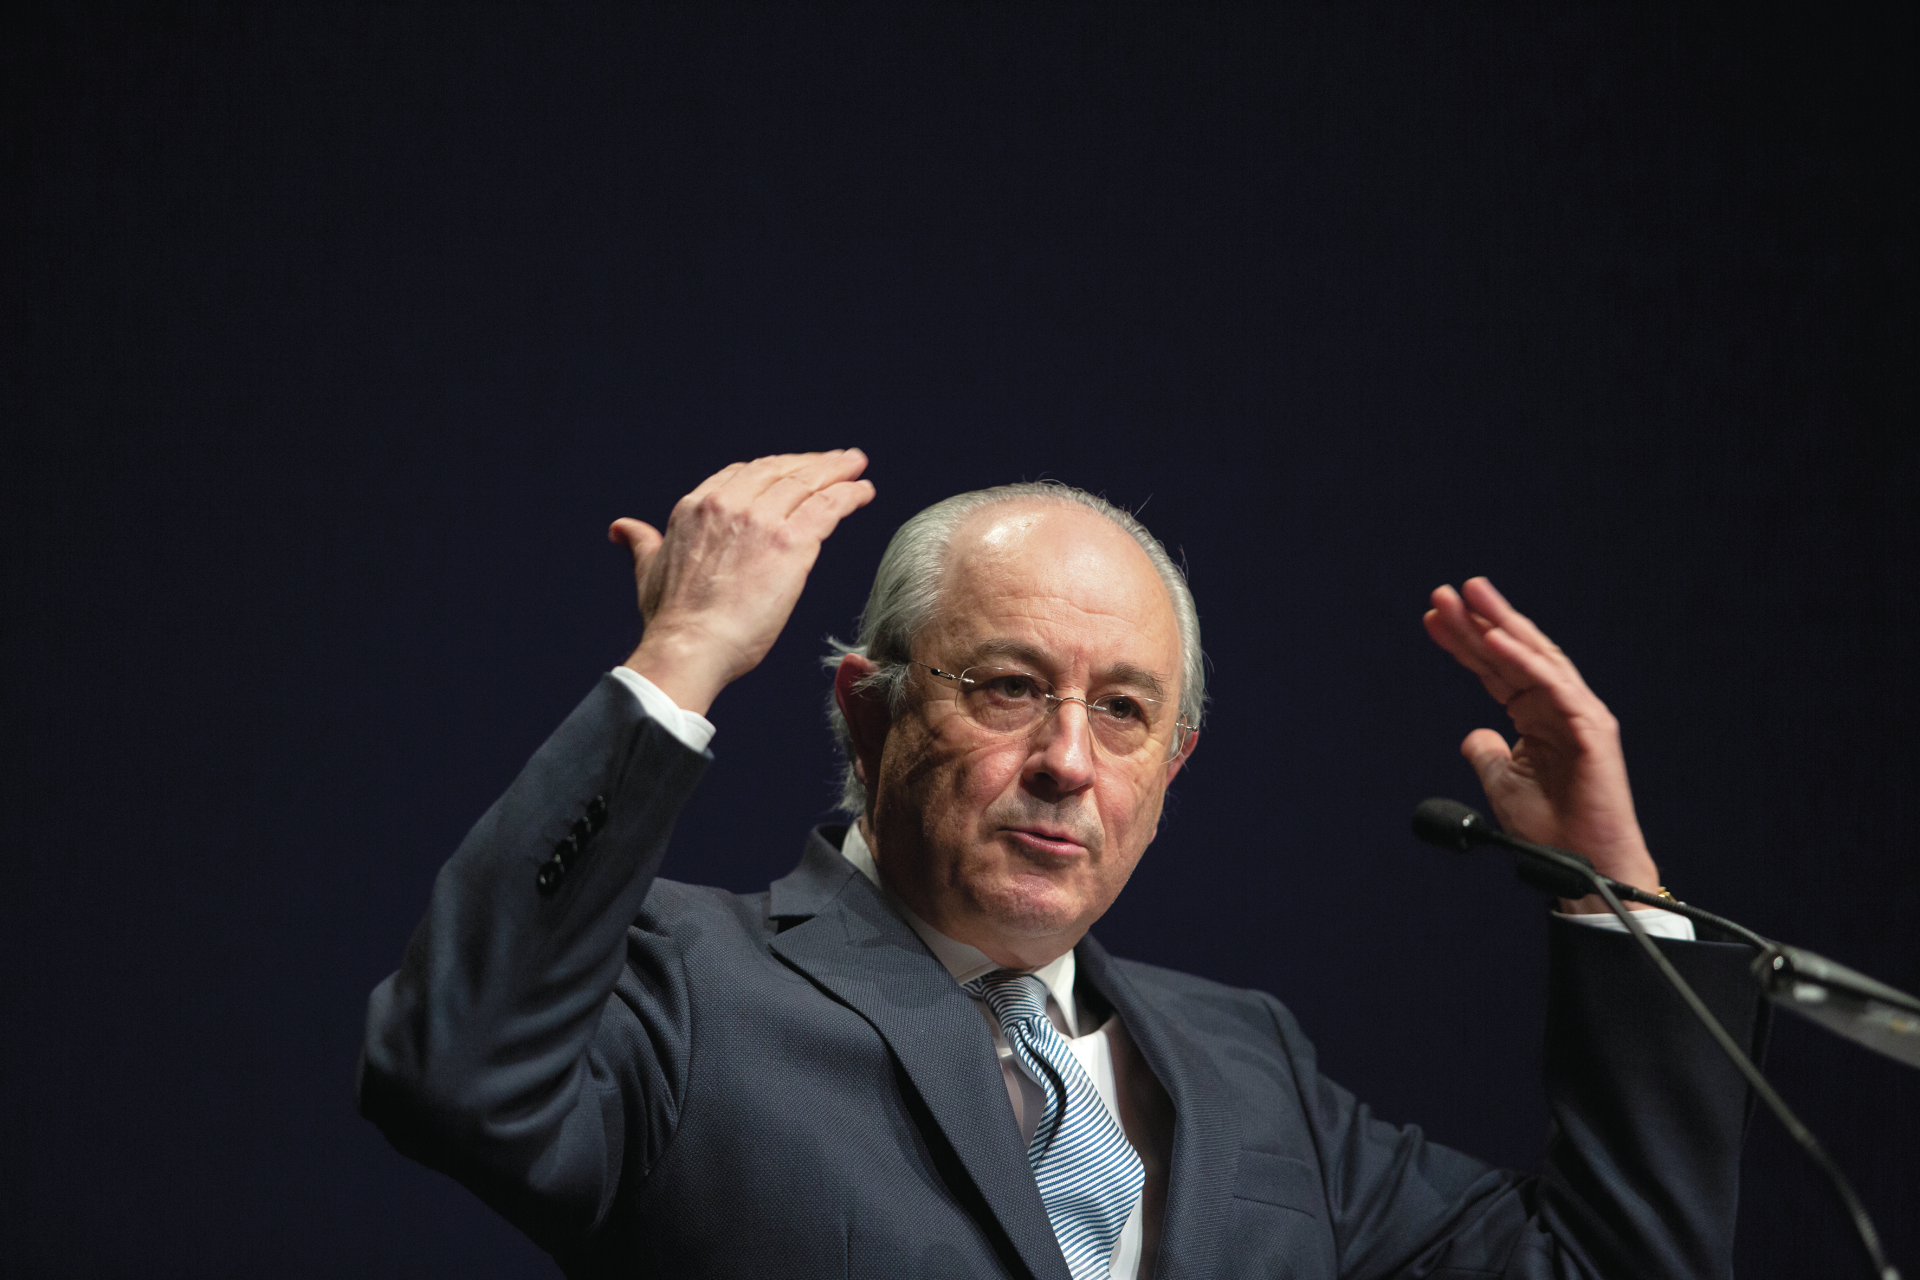 Rui Rio reage a decisão do Constitucional: “Quem sai prejudicado são os portugueses”